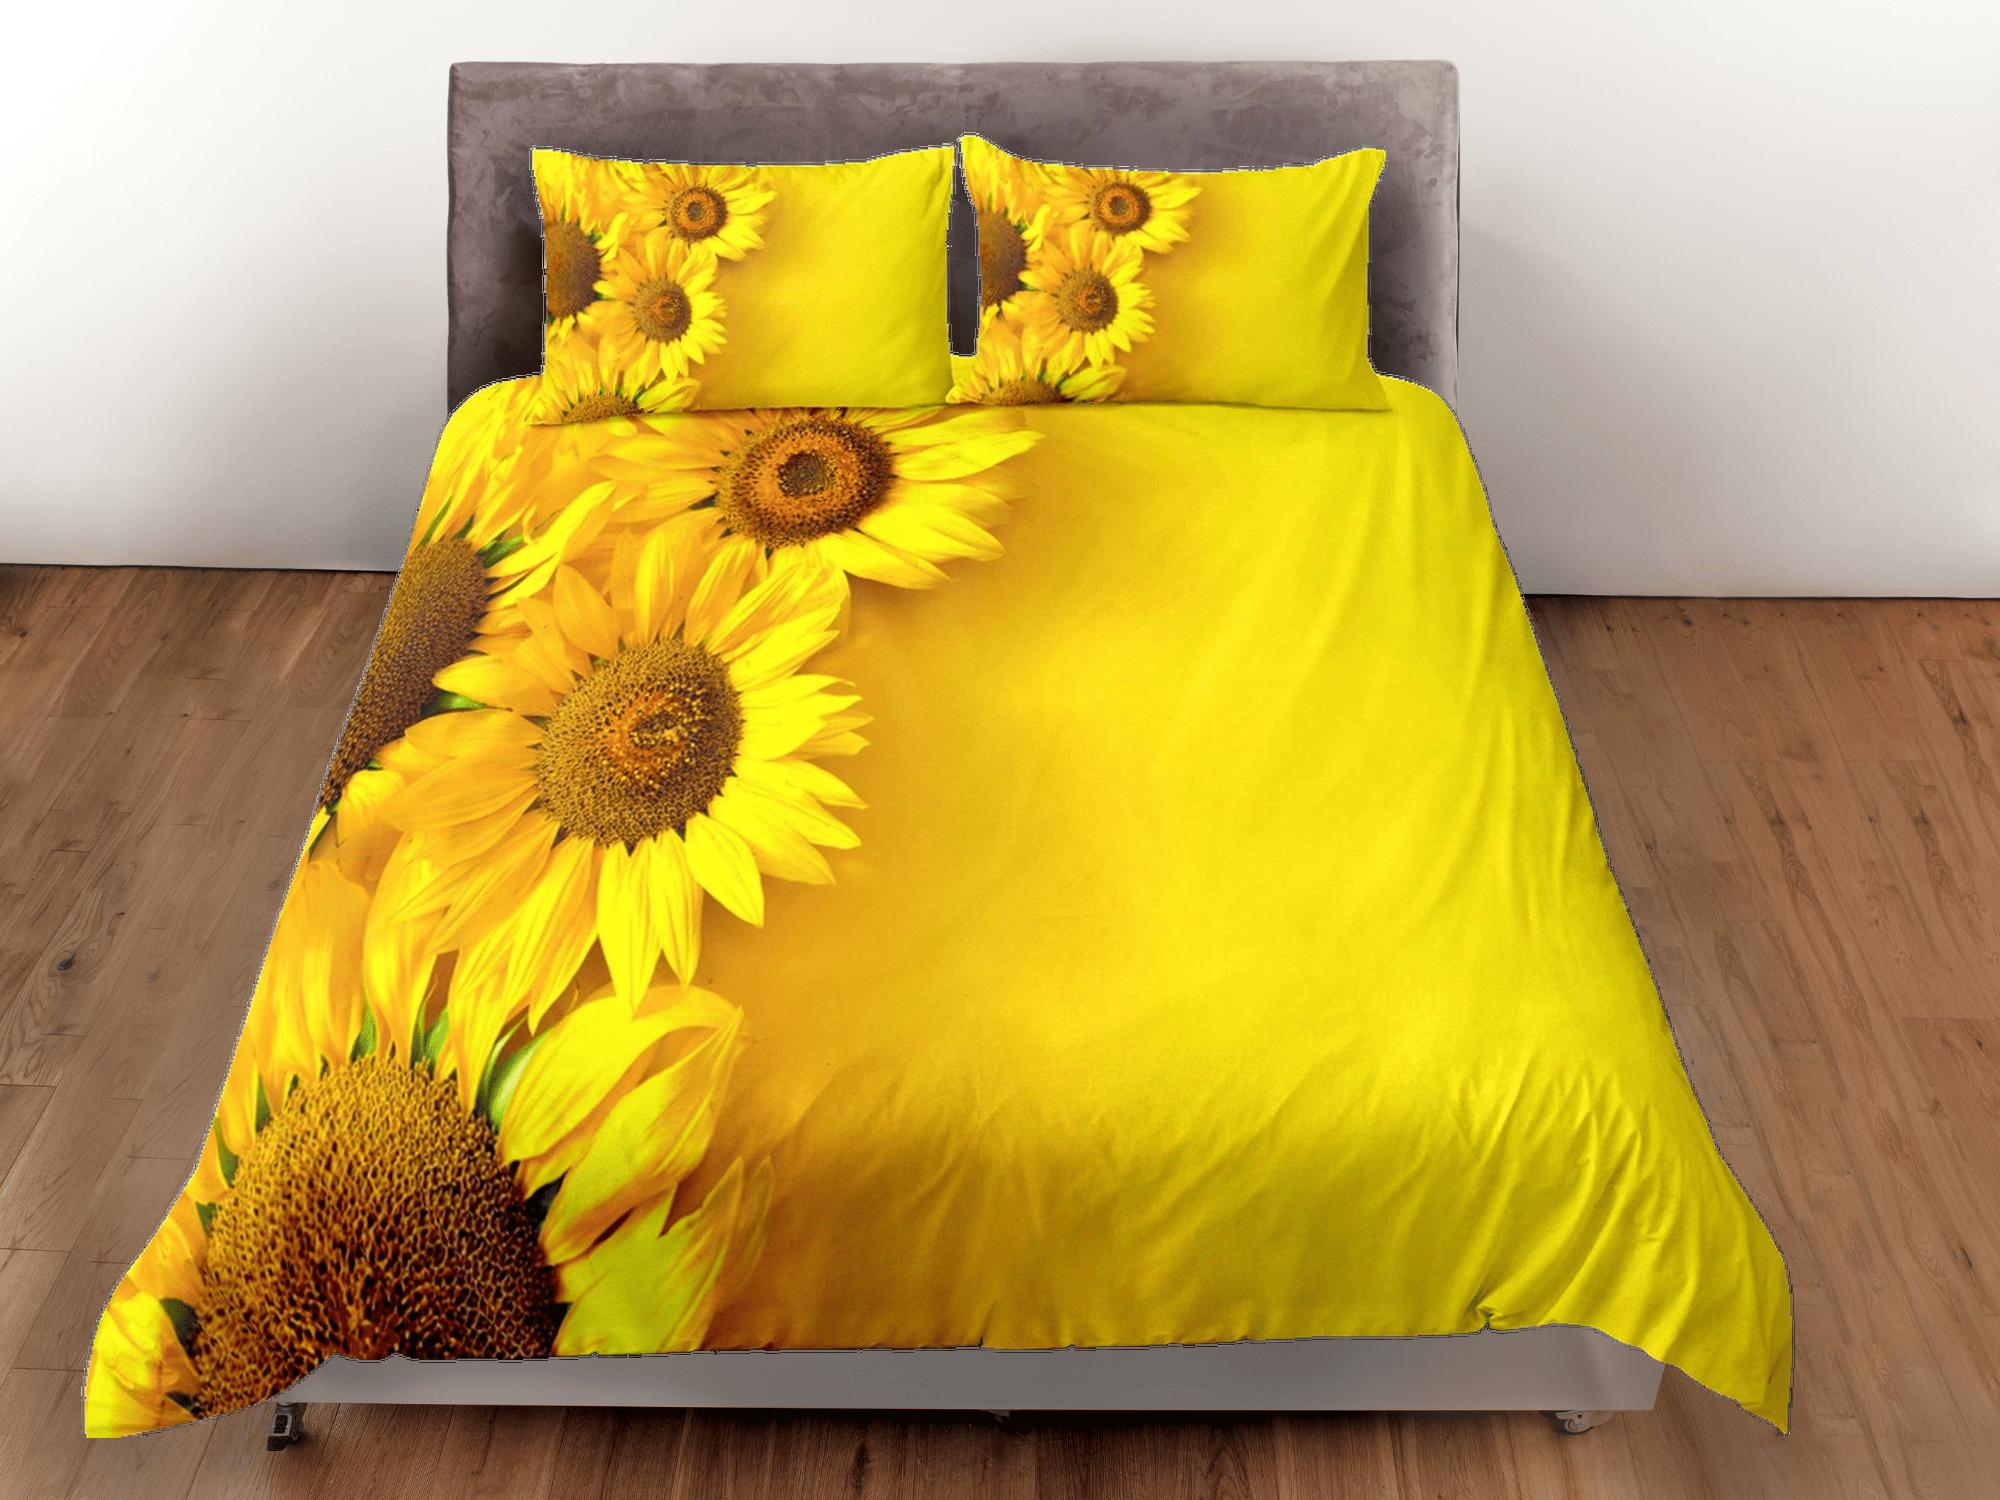 daintyduvet Sunflower floral bedding, yellow duvet cover queen, king, boho duvet, designer bedding, aesthetic bedding, maximalist full size bedding